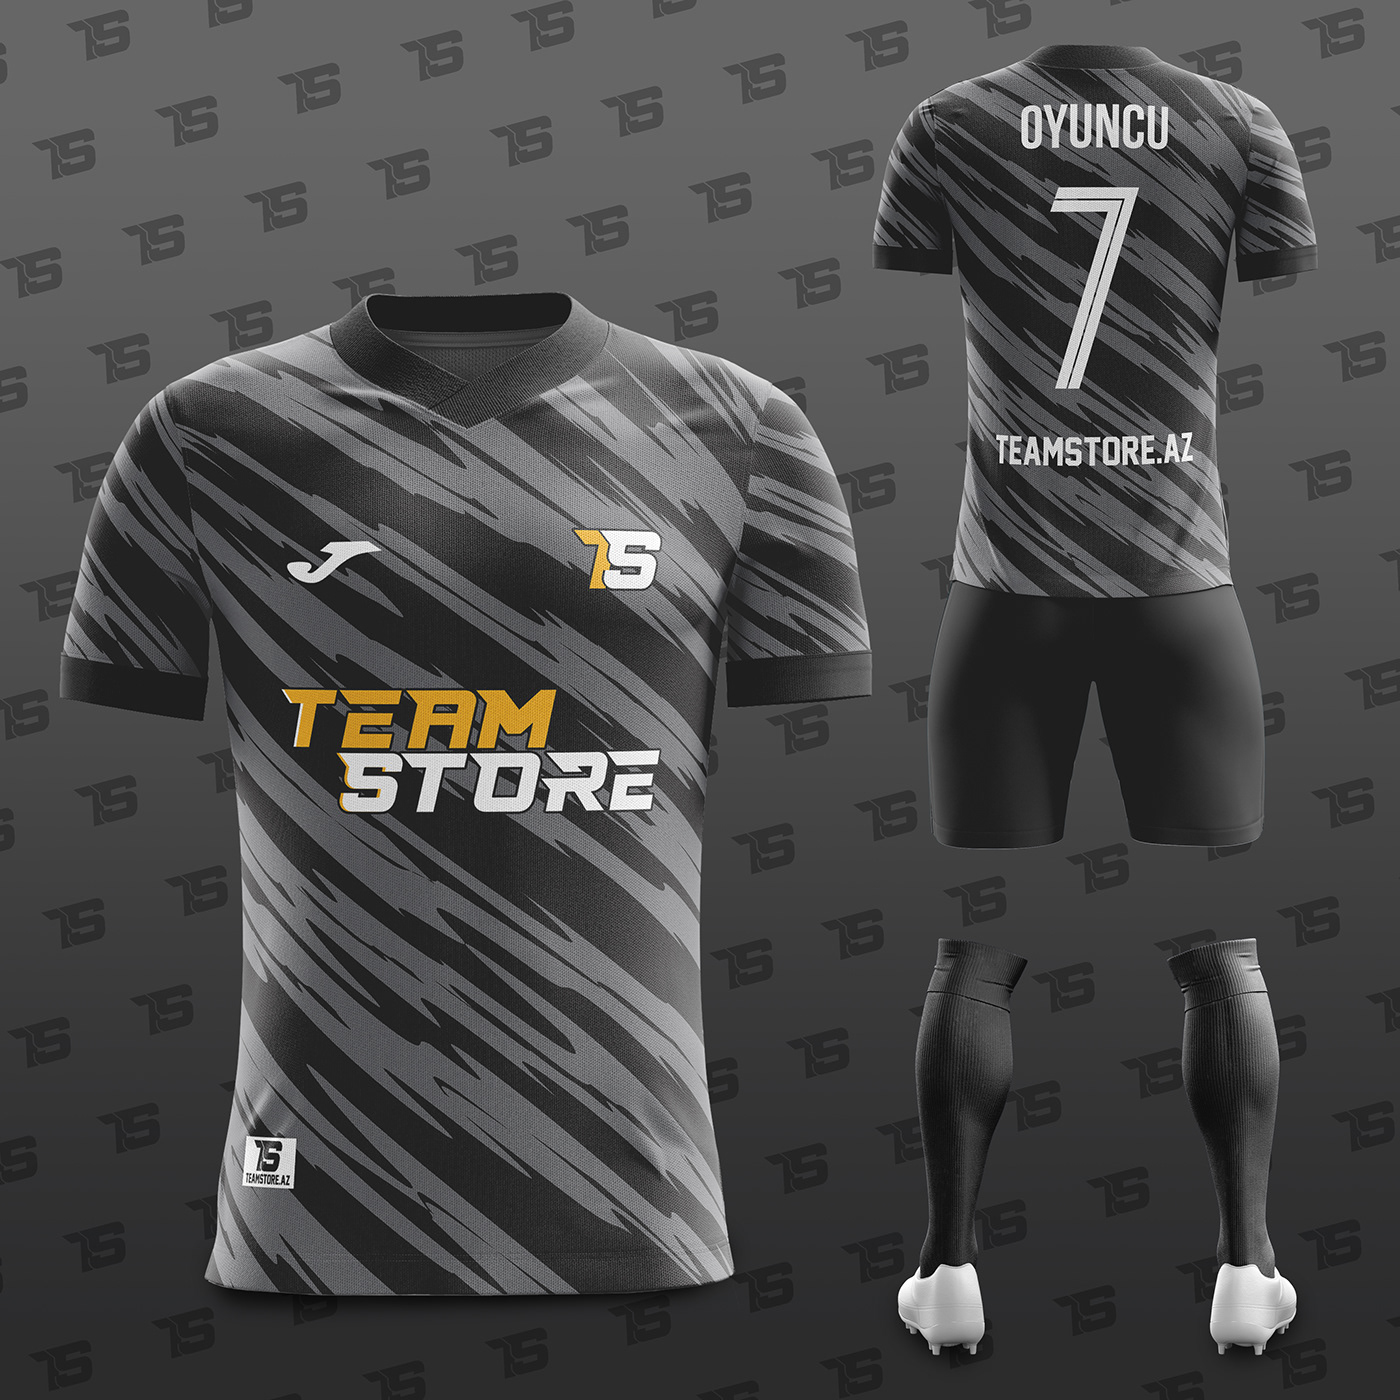 design designer football jersey Jersey Design Jerseys soccer Social media post Socialmedia Sports Design